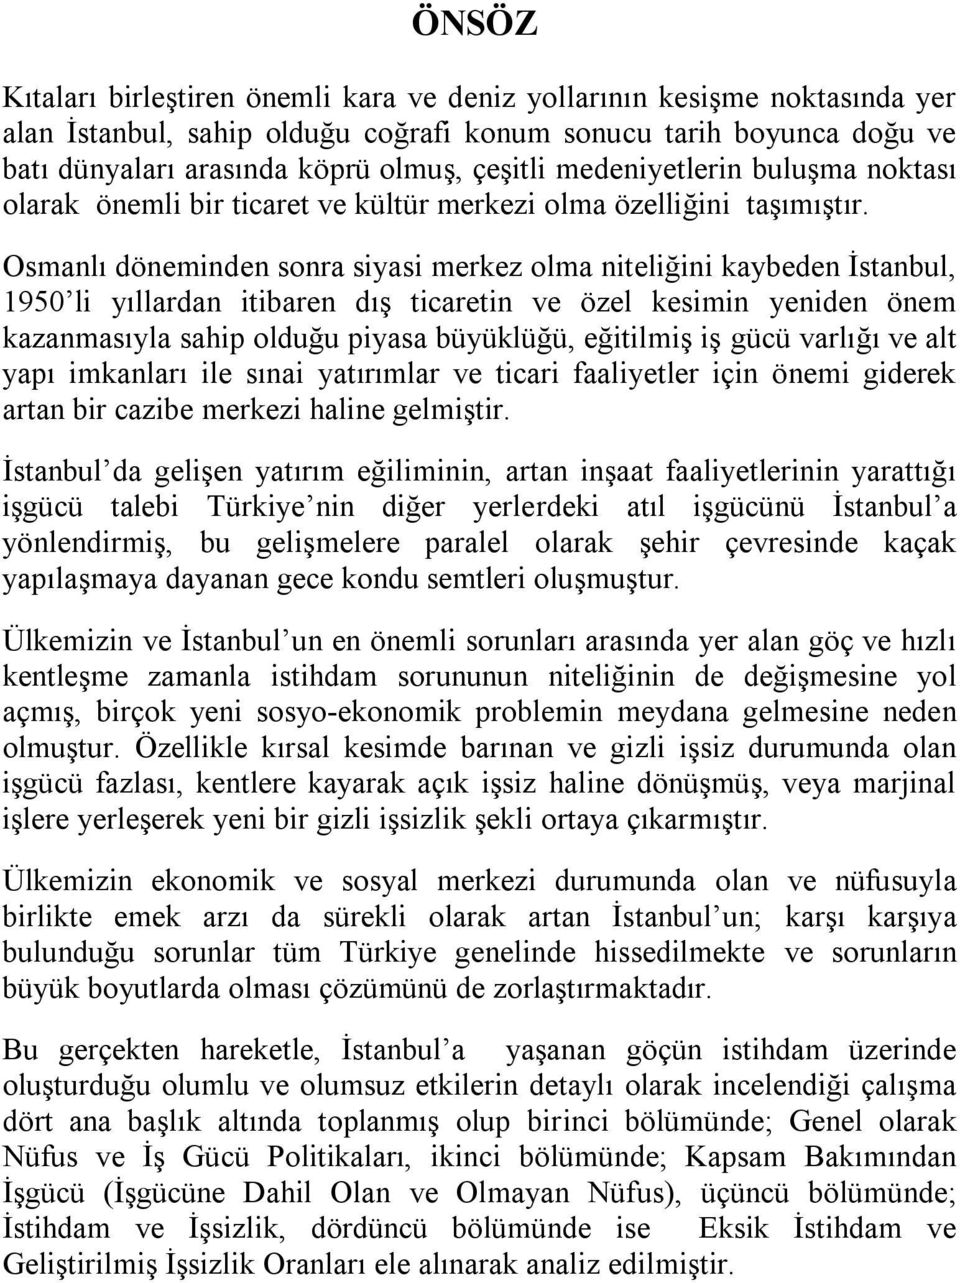 Osmanlı döneminden sonra siyasi merkez olma niteliğini kaybeden İstanbul, 1950 li yıllardan itibaren dış ticaretin ve özel kesimin yeniden önem kazanmasıyla sahip olduğu piyasa büyüklüğü, eğitilmiş